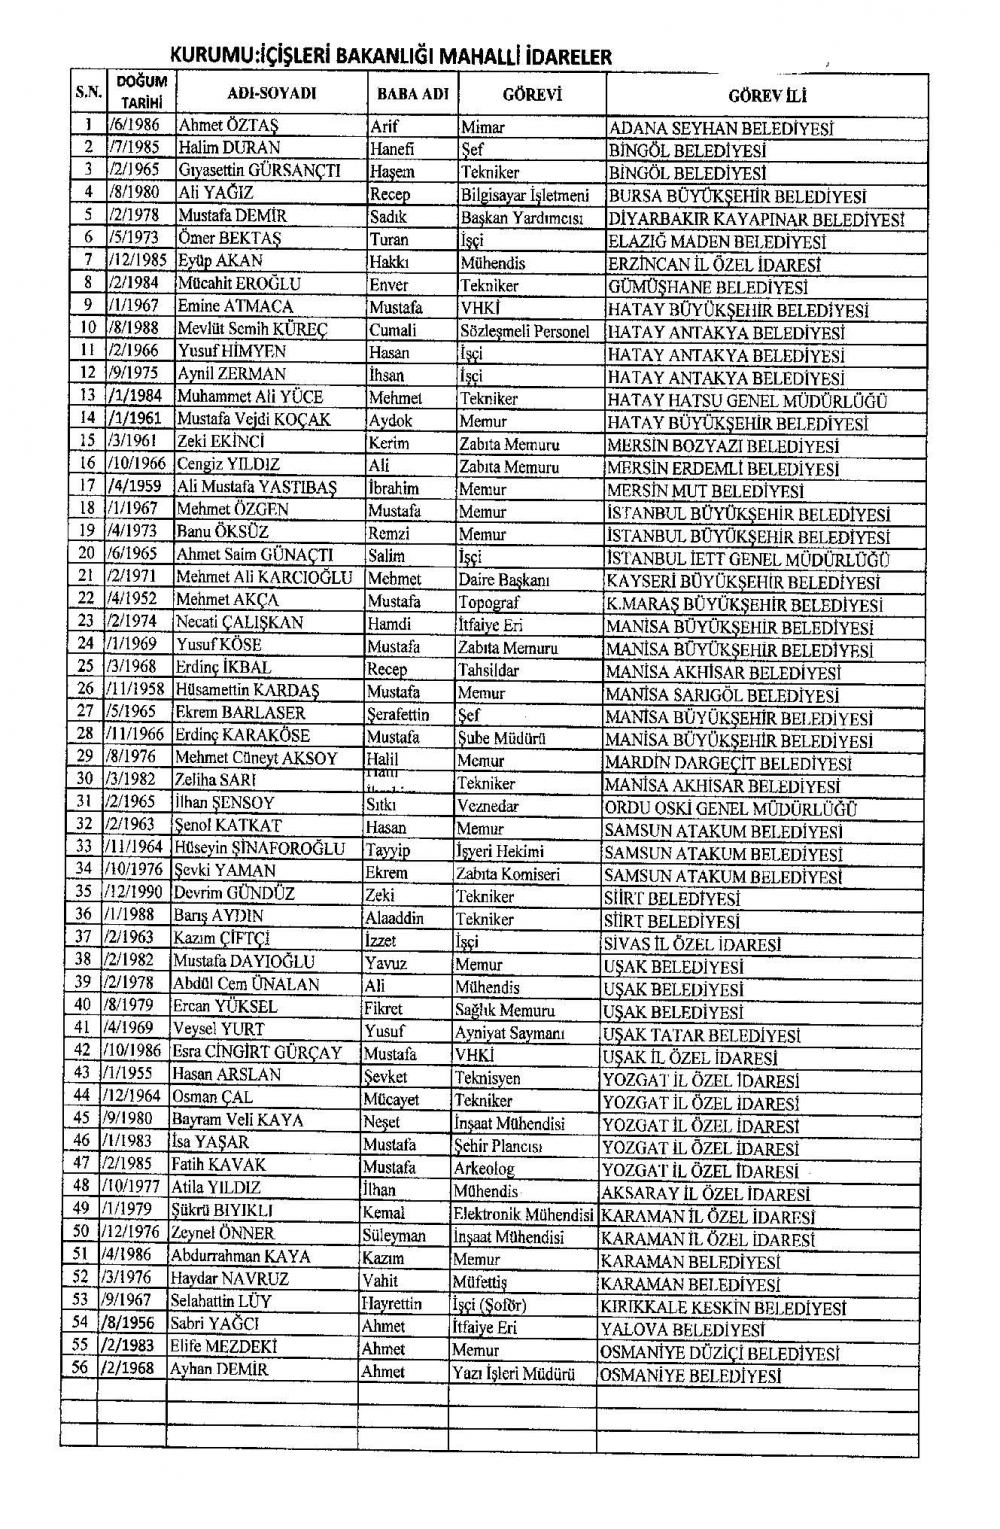 KHK ile görevine iade edilen personelin tam listesi 15 Temmuz 16